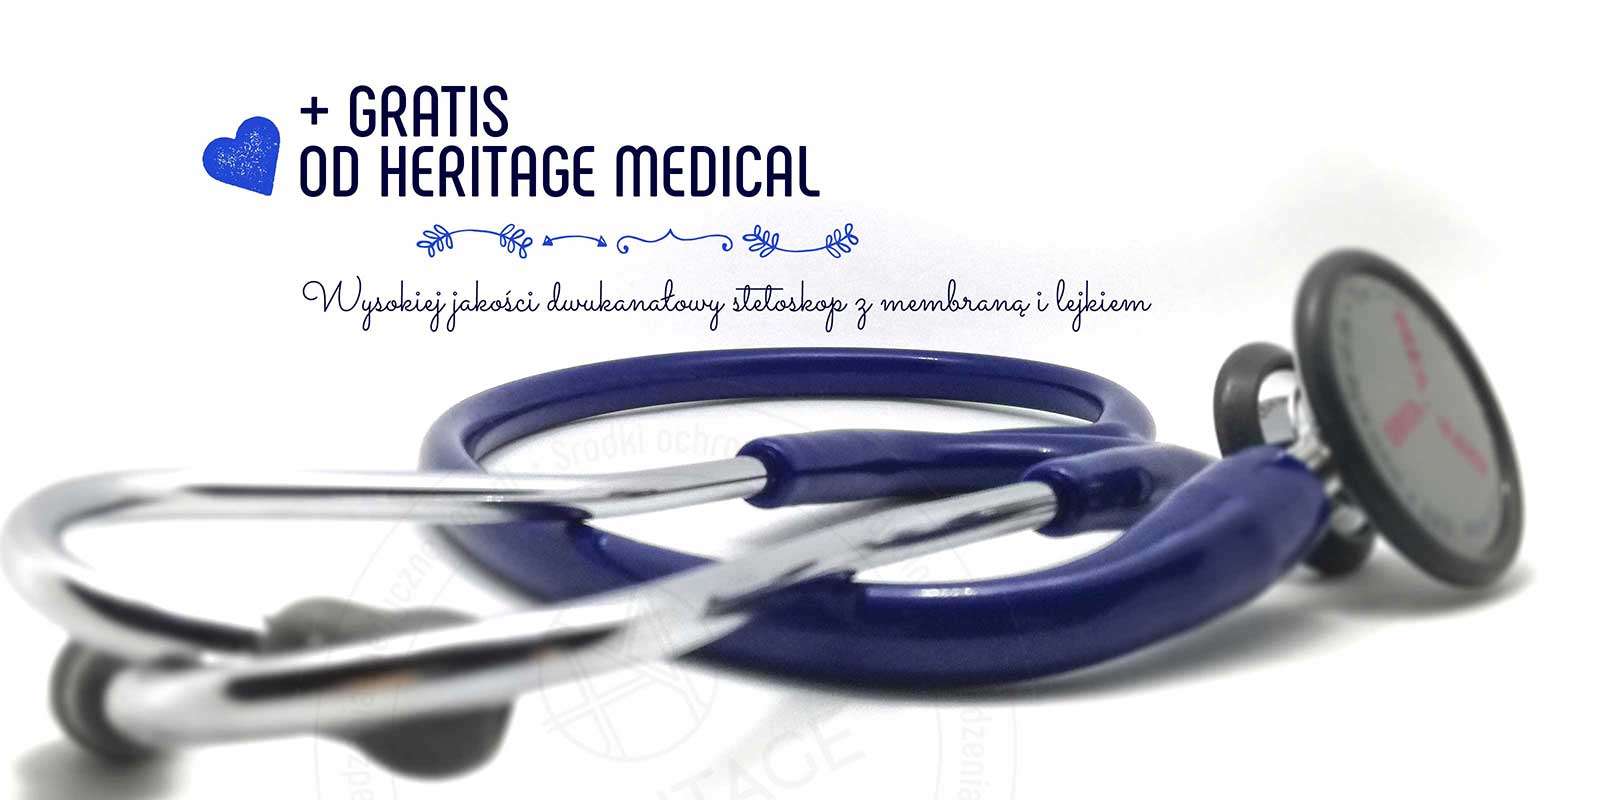 Gratis od Heritage Medical